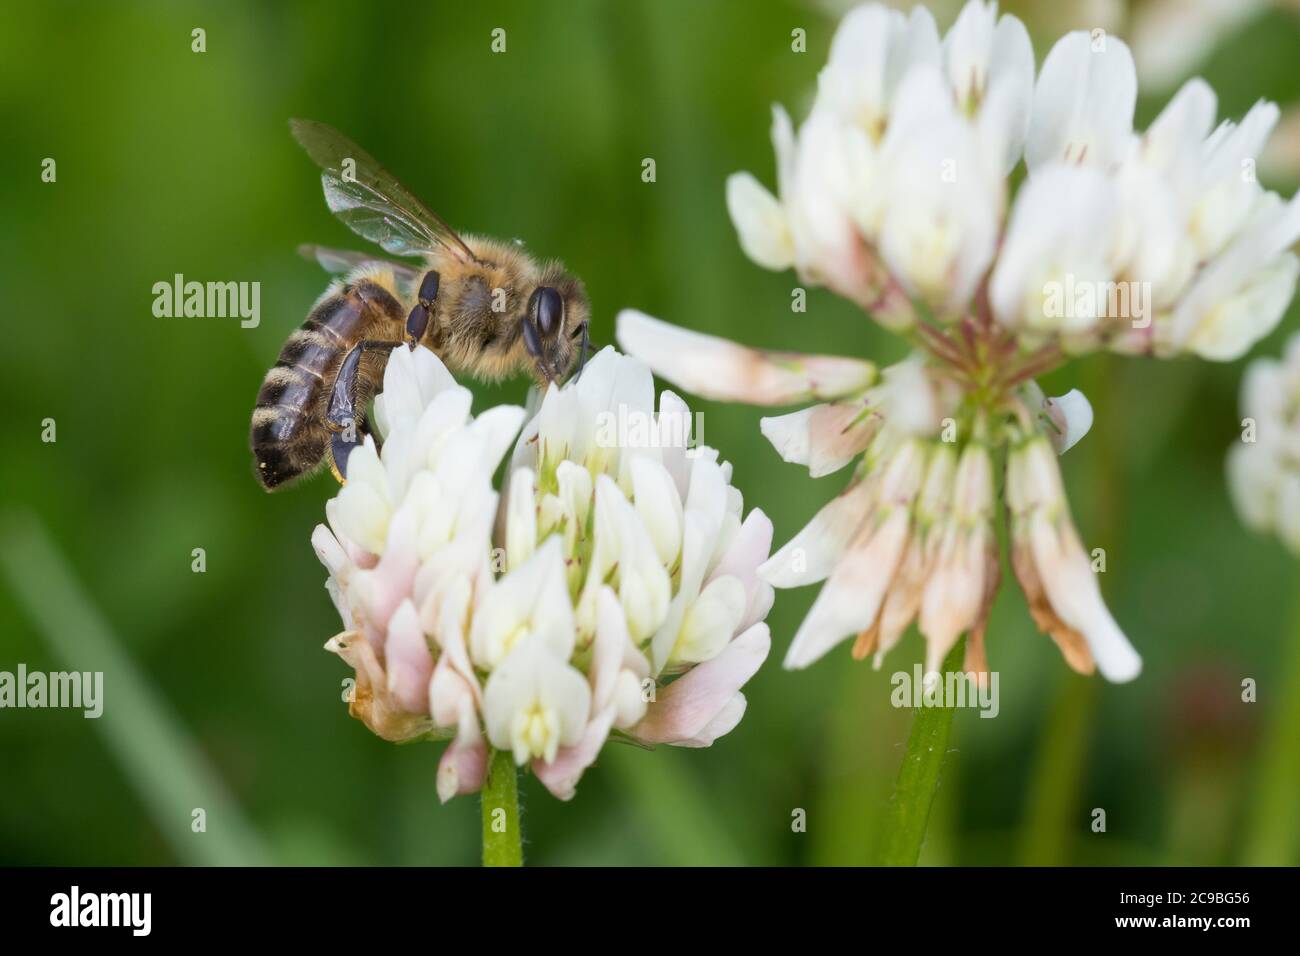 Honigbiene, Honig-Biene, Europäische Honigbiene, Westliche Honigbiene, Biene, Bienen, Apis mellifera, Apis mellifica, honey bee, hive bee, western hon Stock Photo